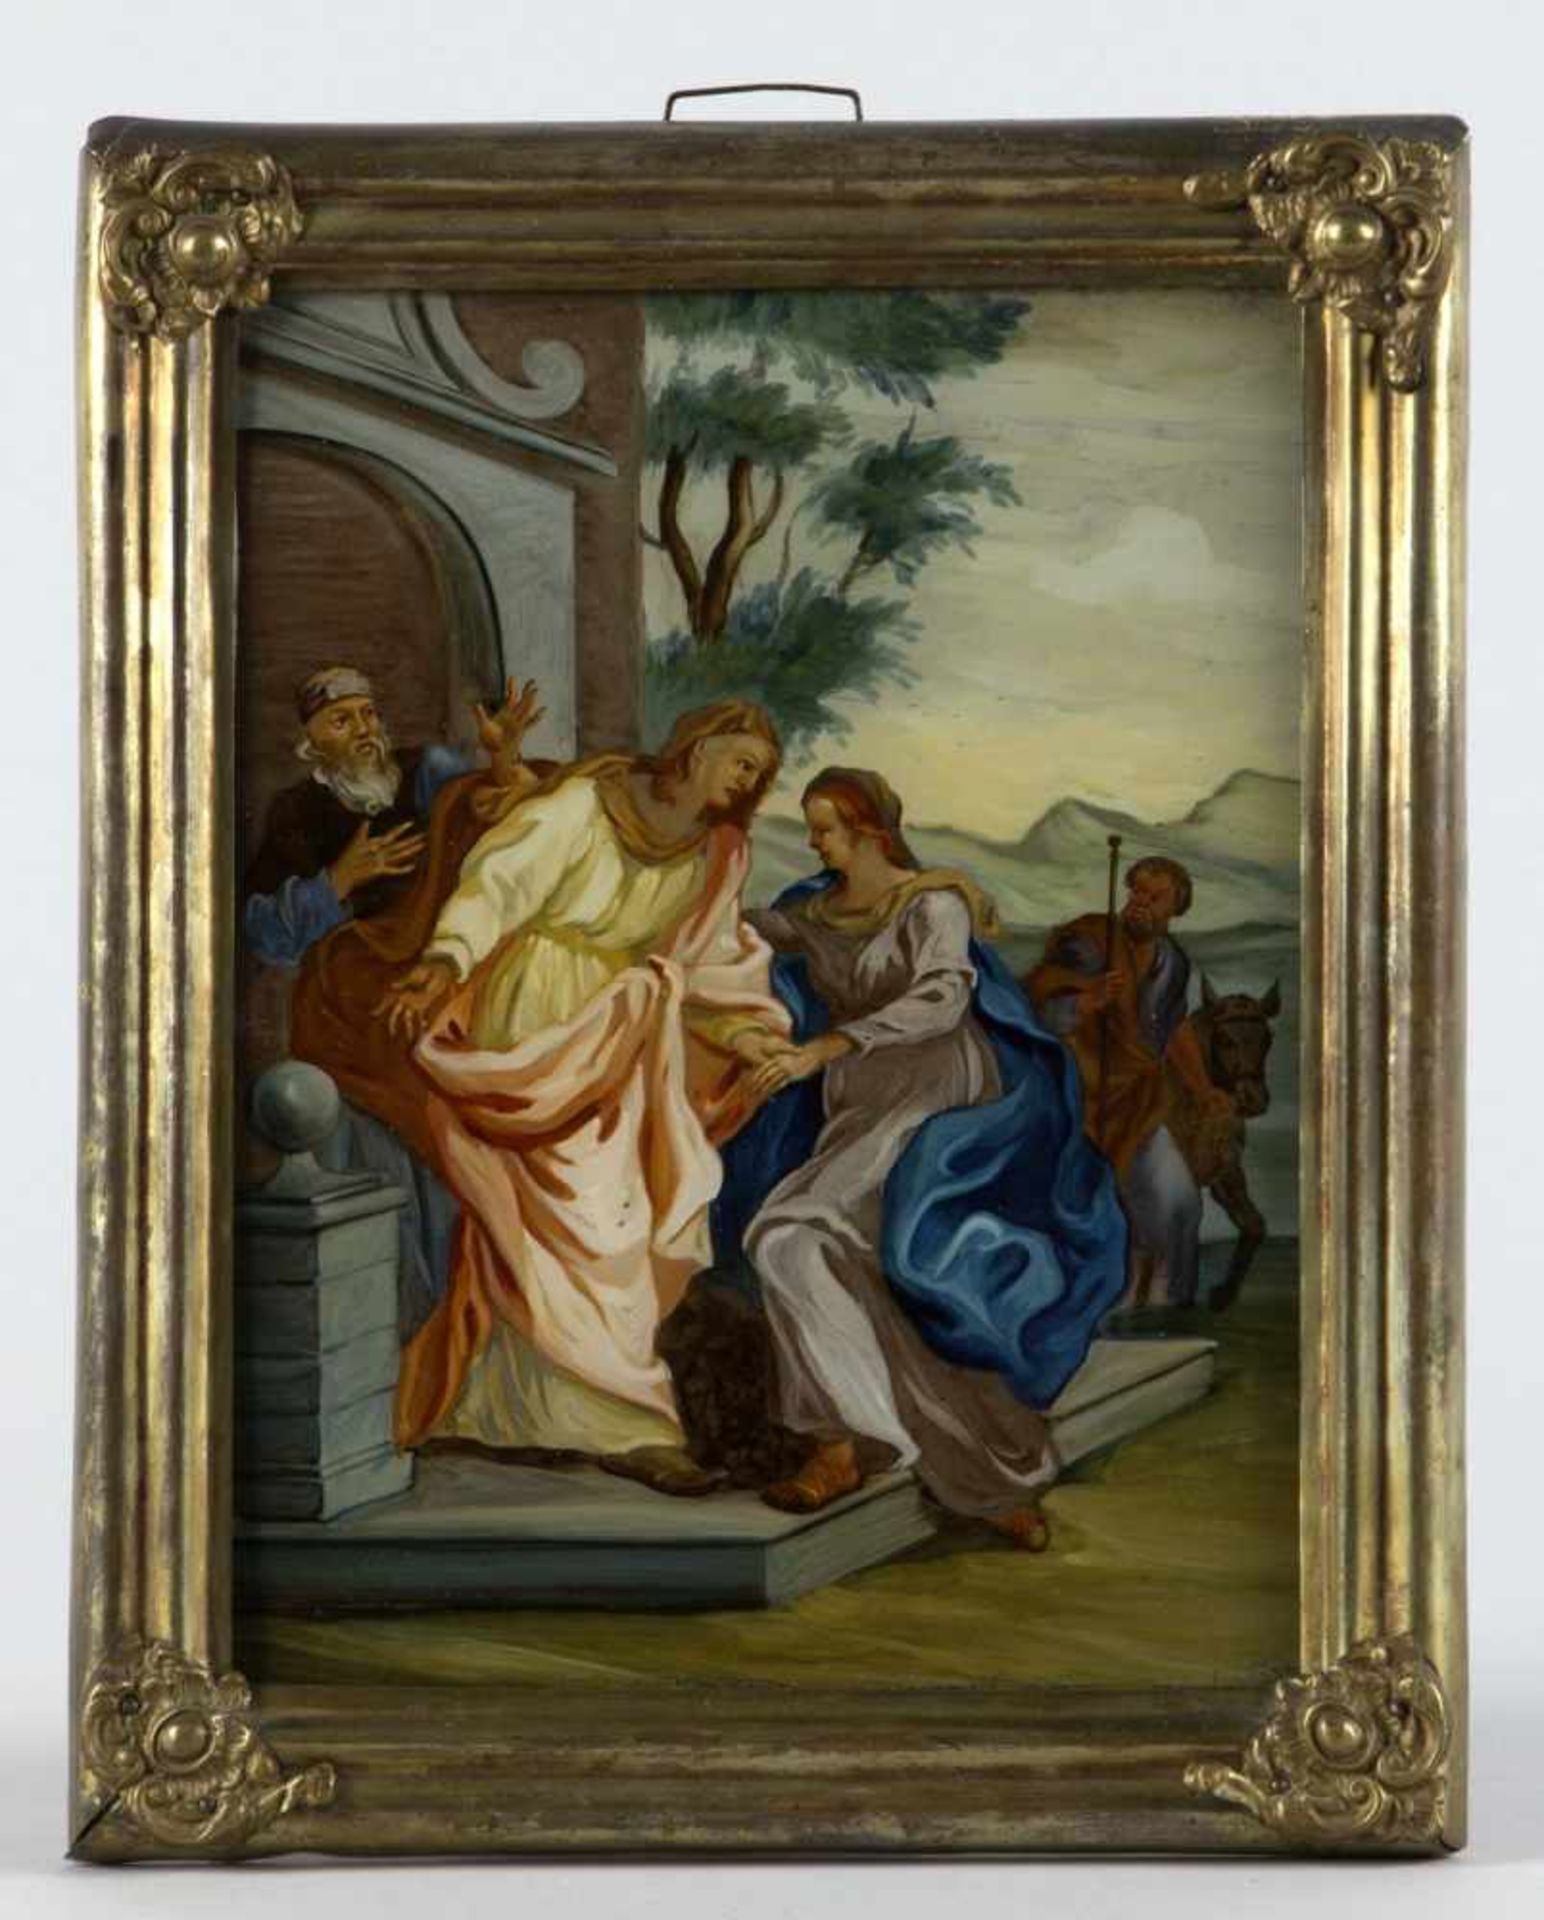 Hinterglasbild "Maria besucht Elisabeth"Tempera auf Glas. Malschule Augsburg oder